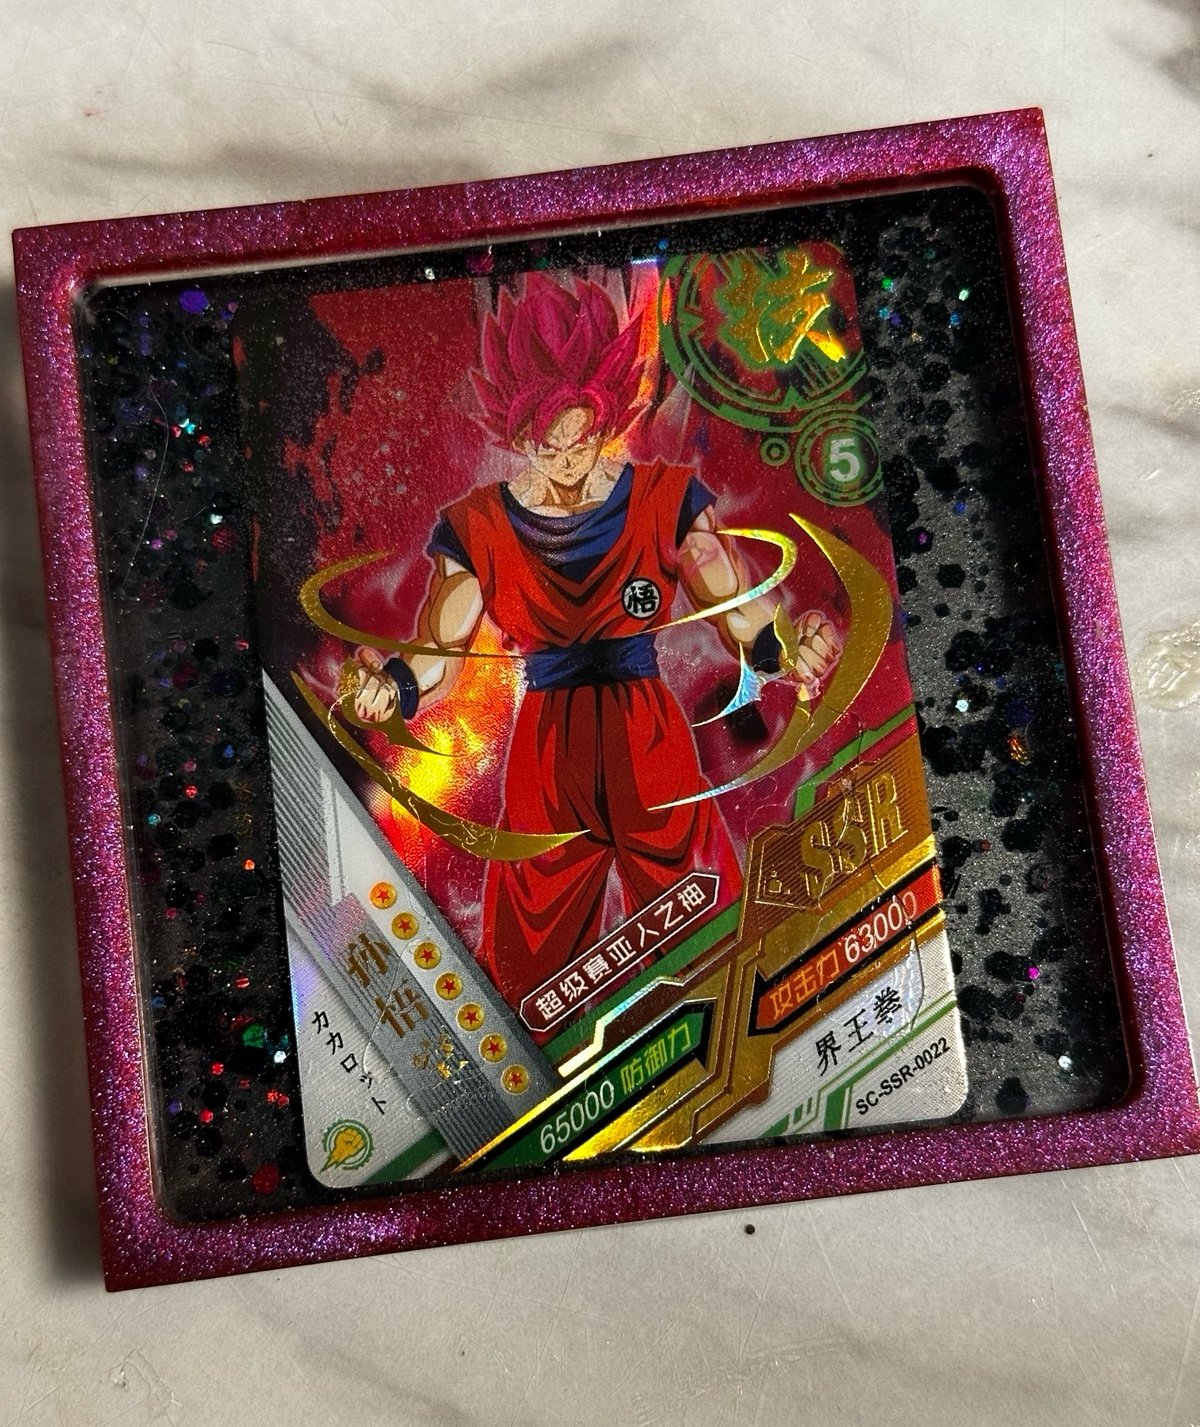 Dragon Ball z Goku SSR card epoxy coaster 1hPFZhHIm